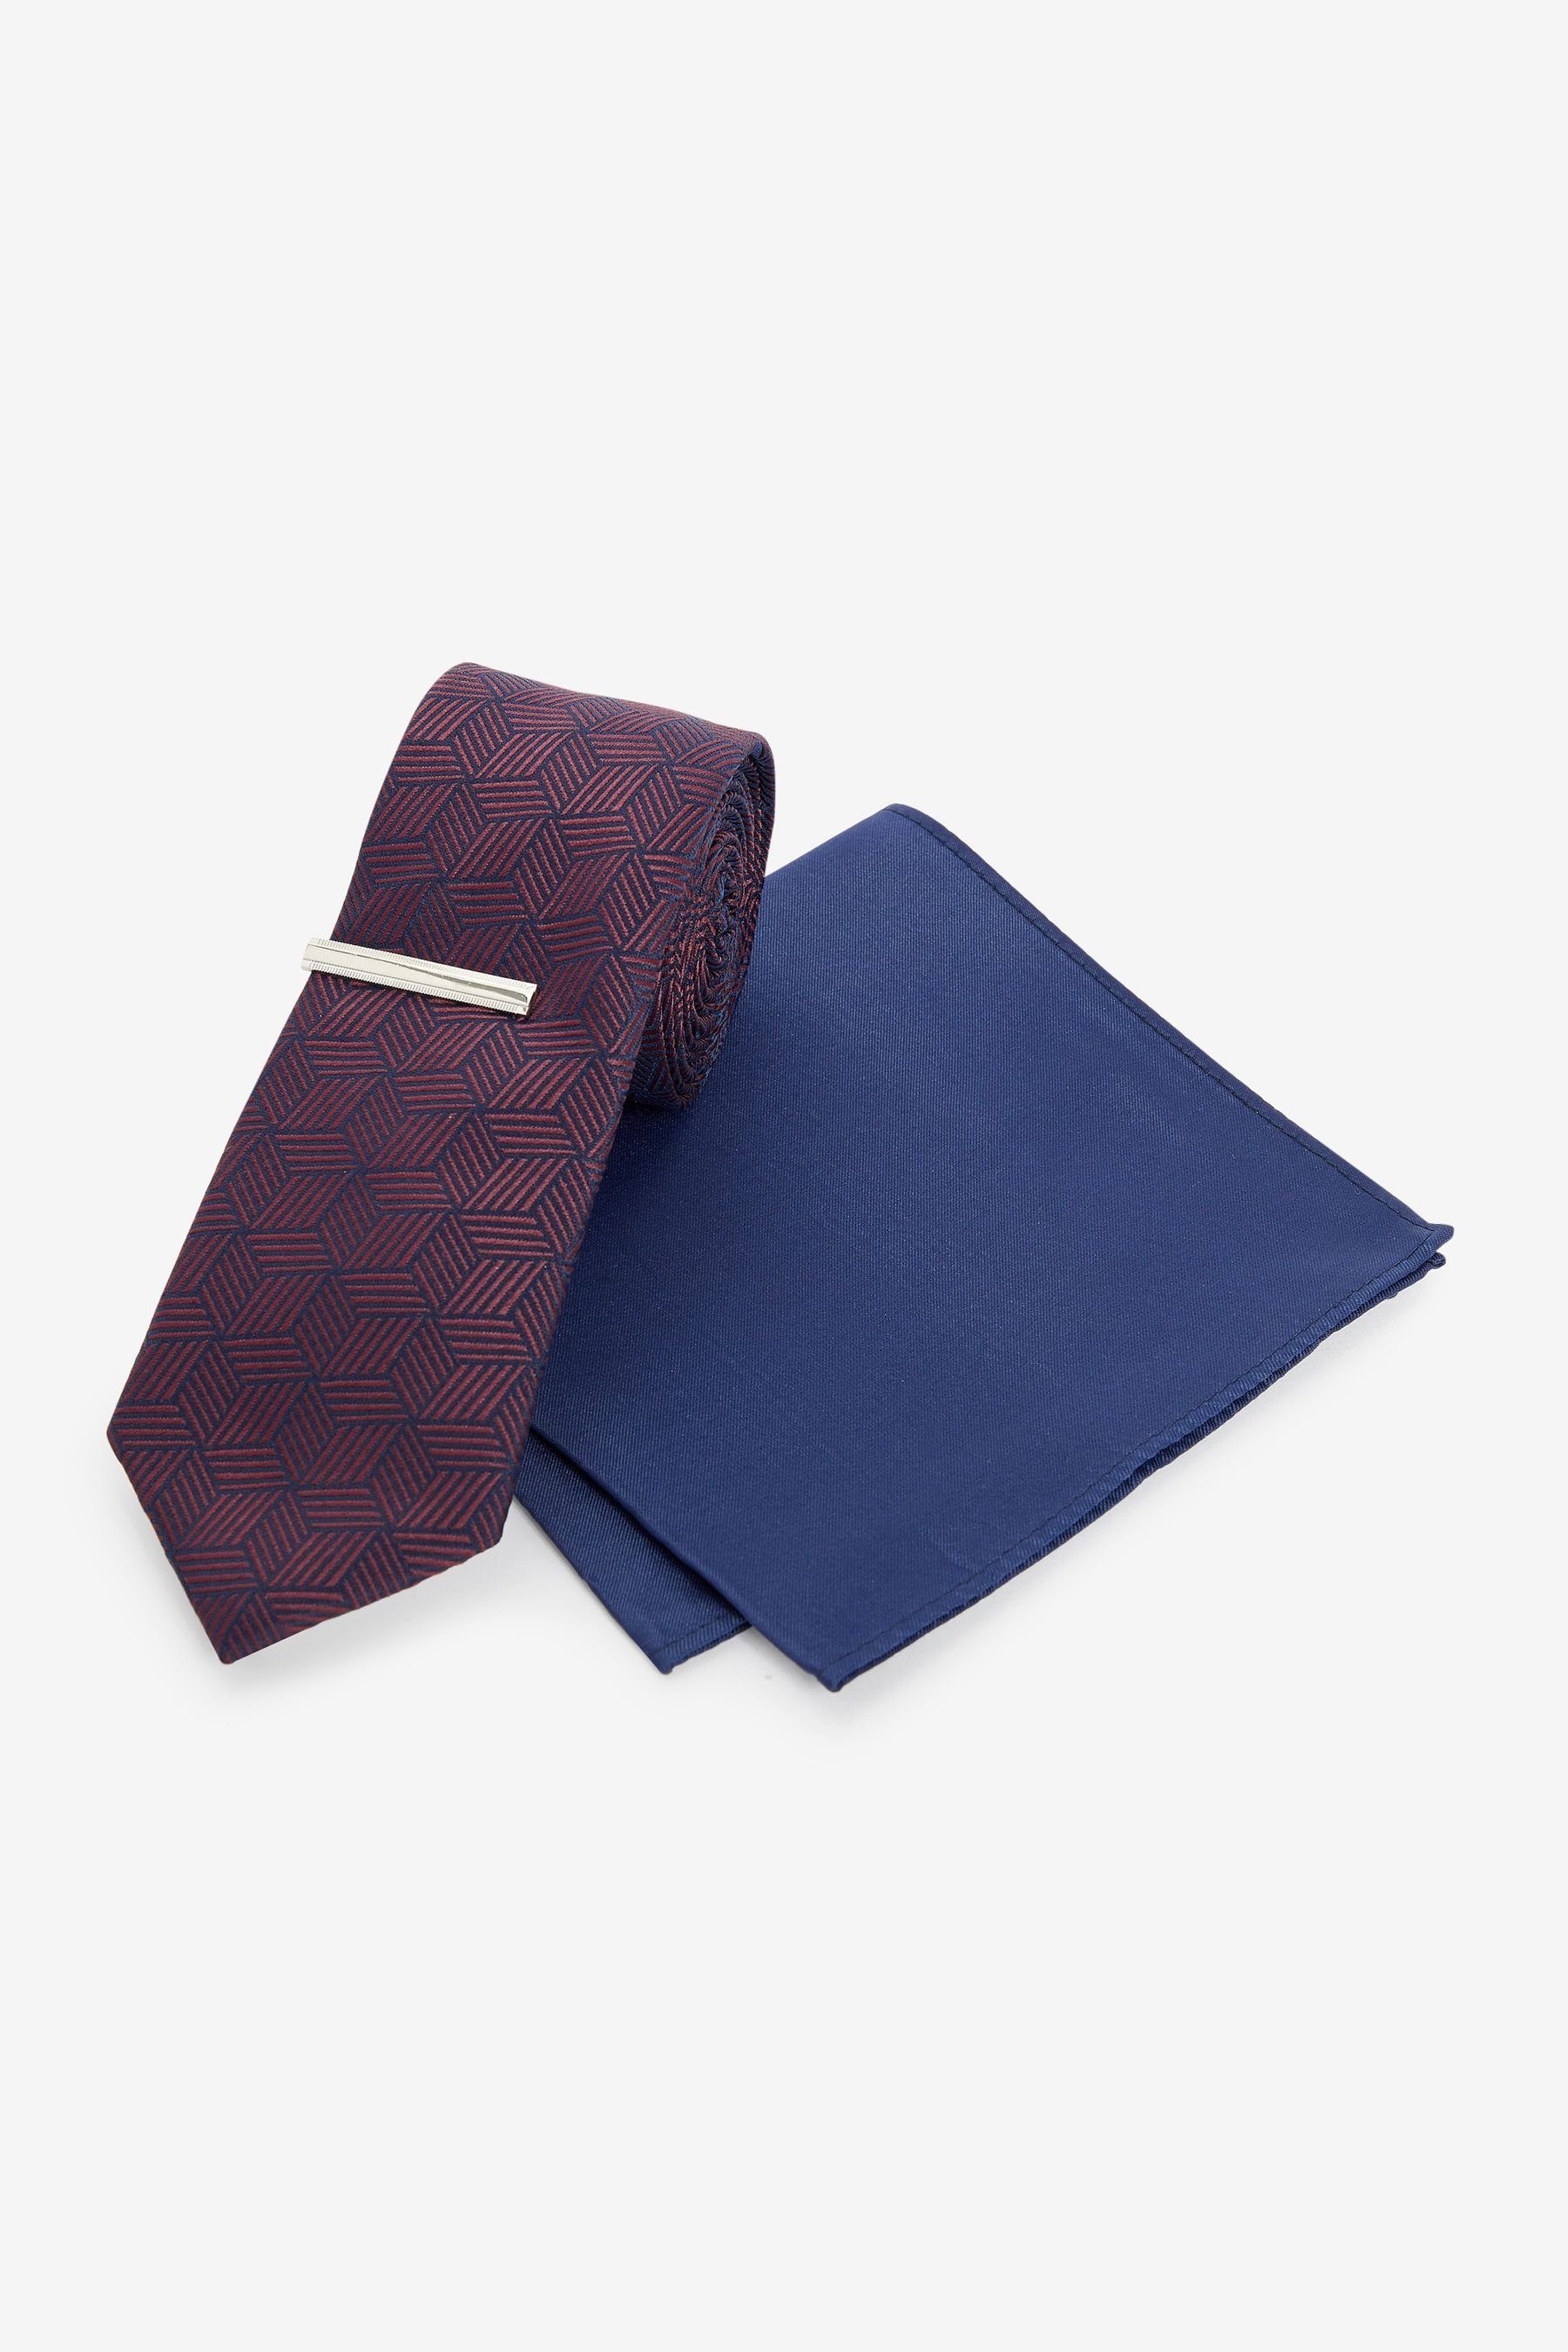 Next Krawatte Slim Krawatte, Einstecktuch und Krawattenklammer (3-St) Burgundy Red/Navy Blue Geometric